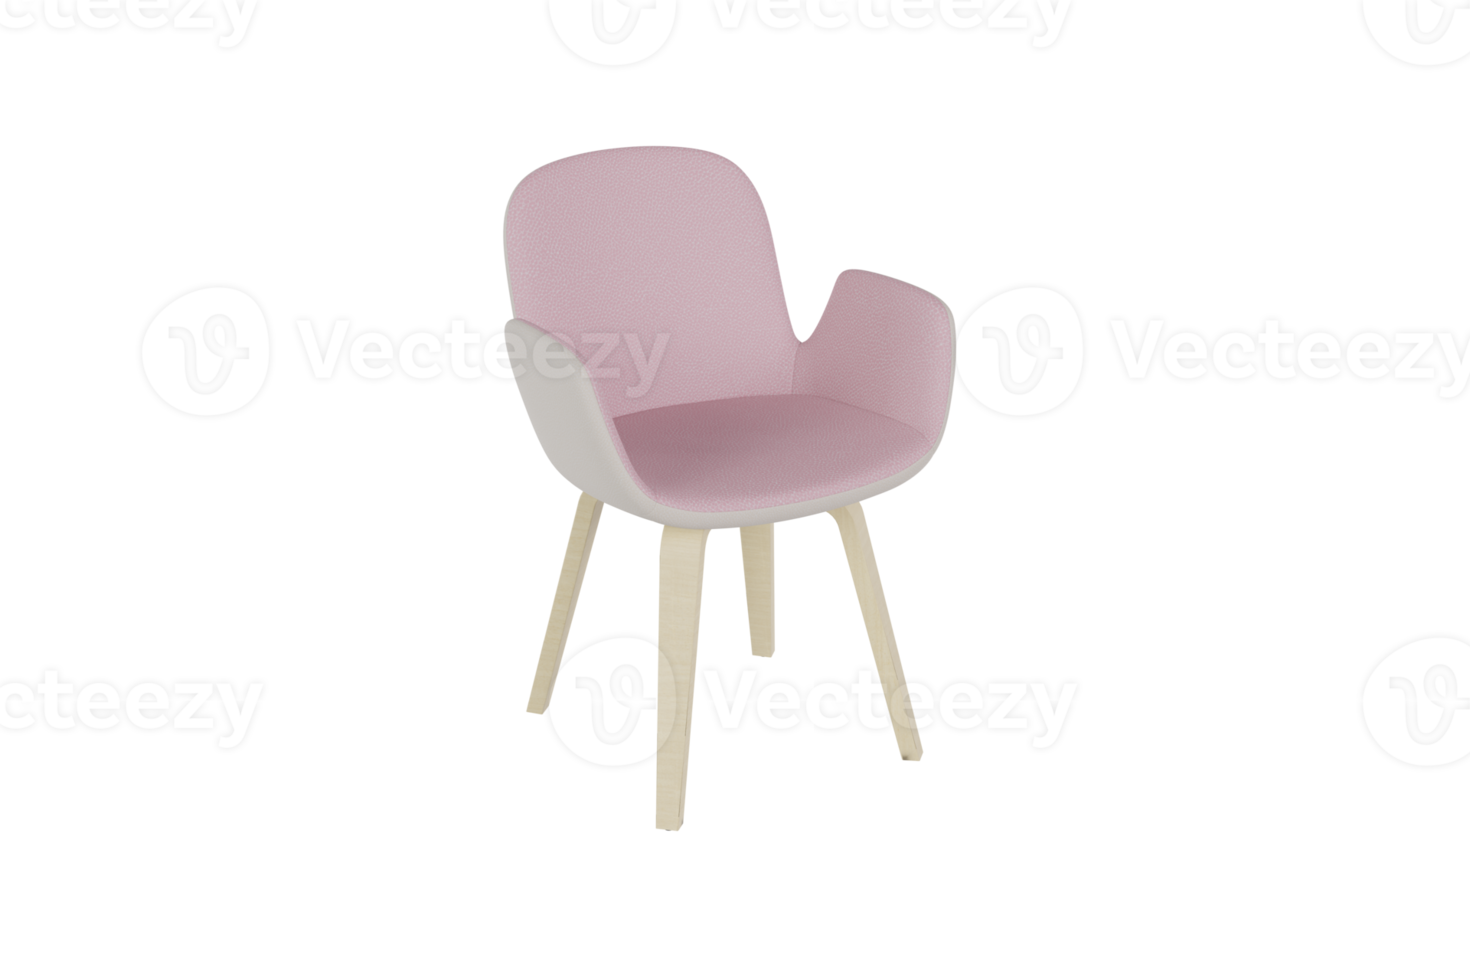 soffa stol skapas från en 3d program png